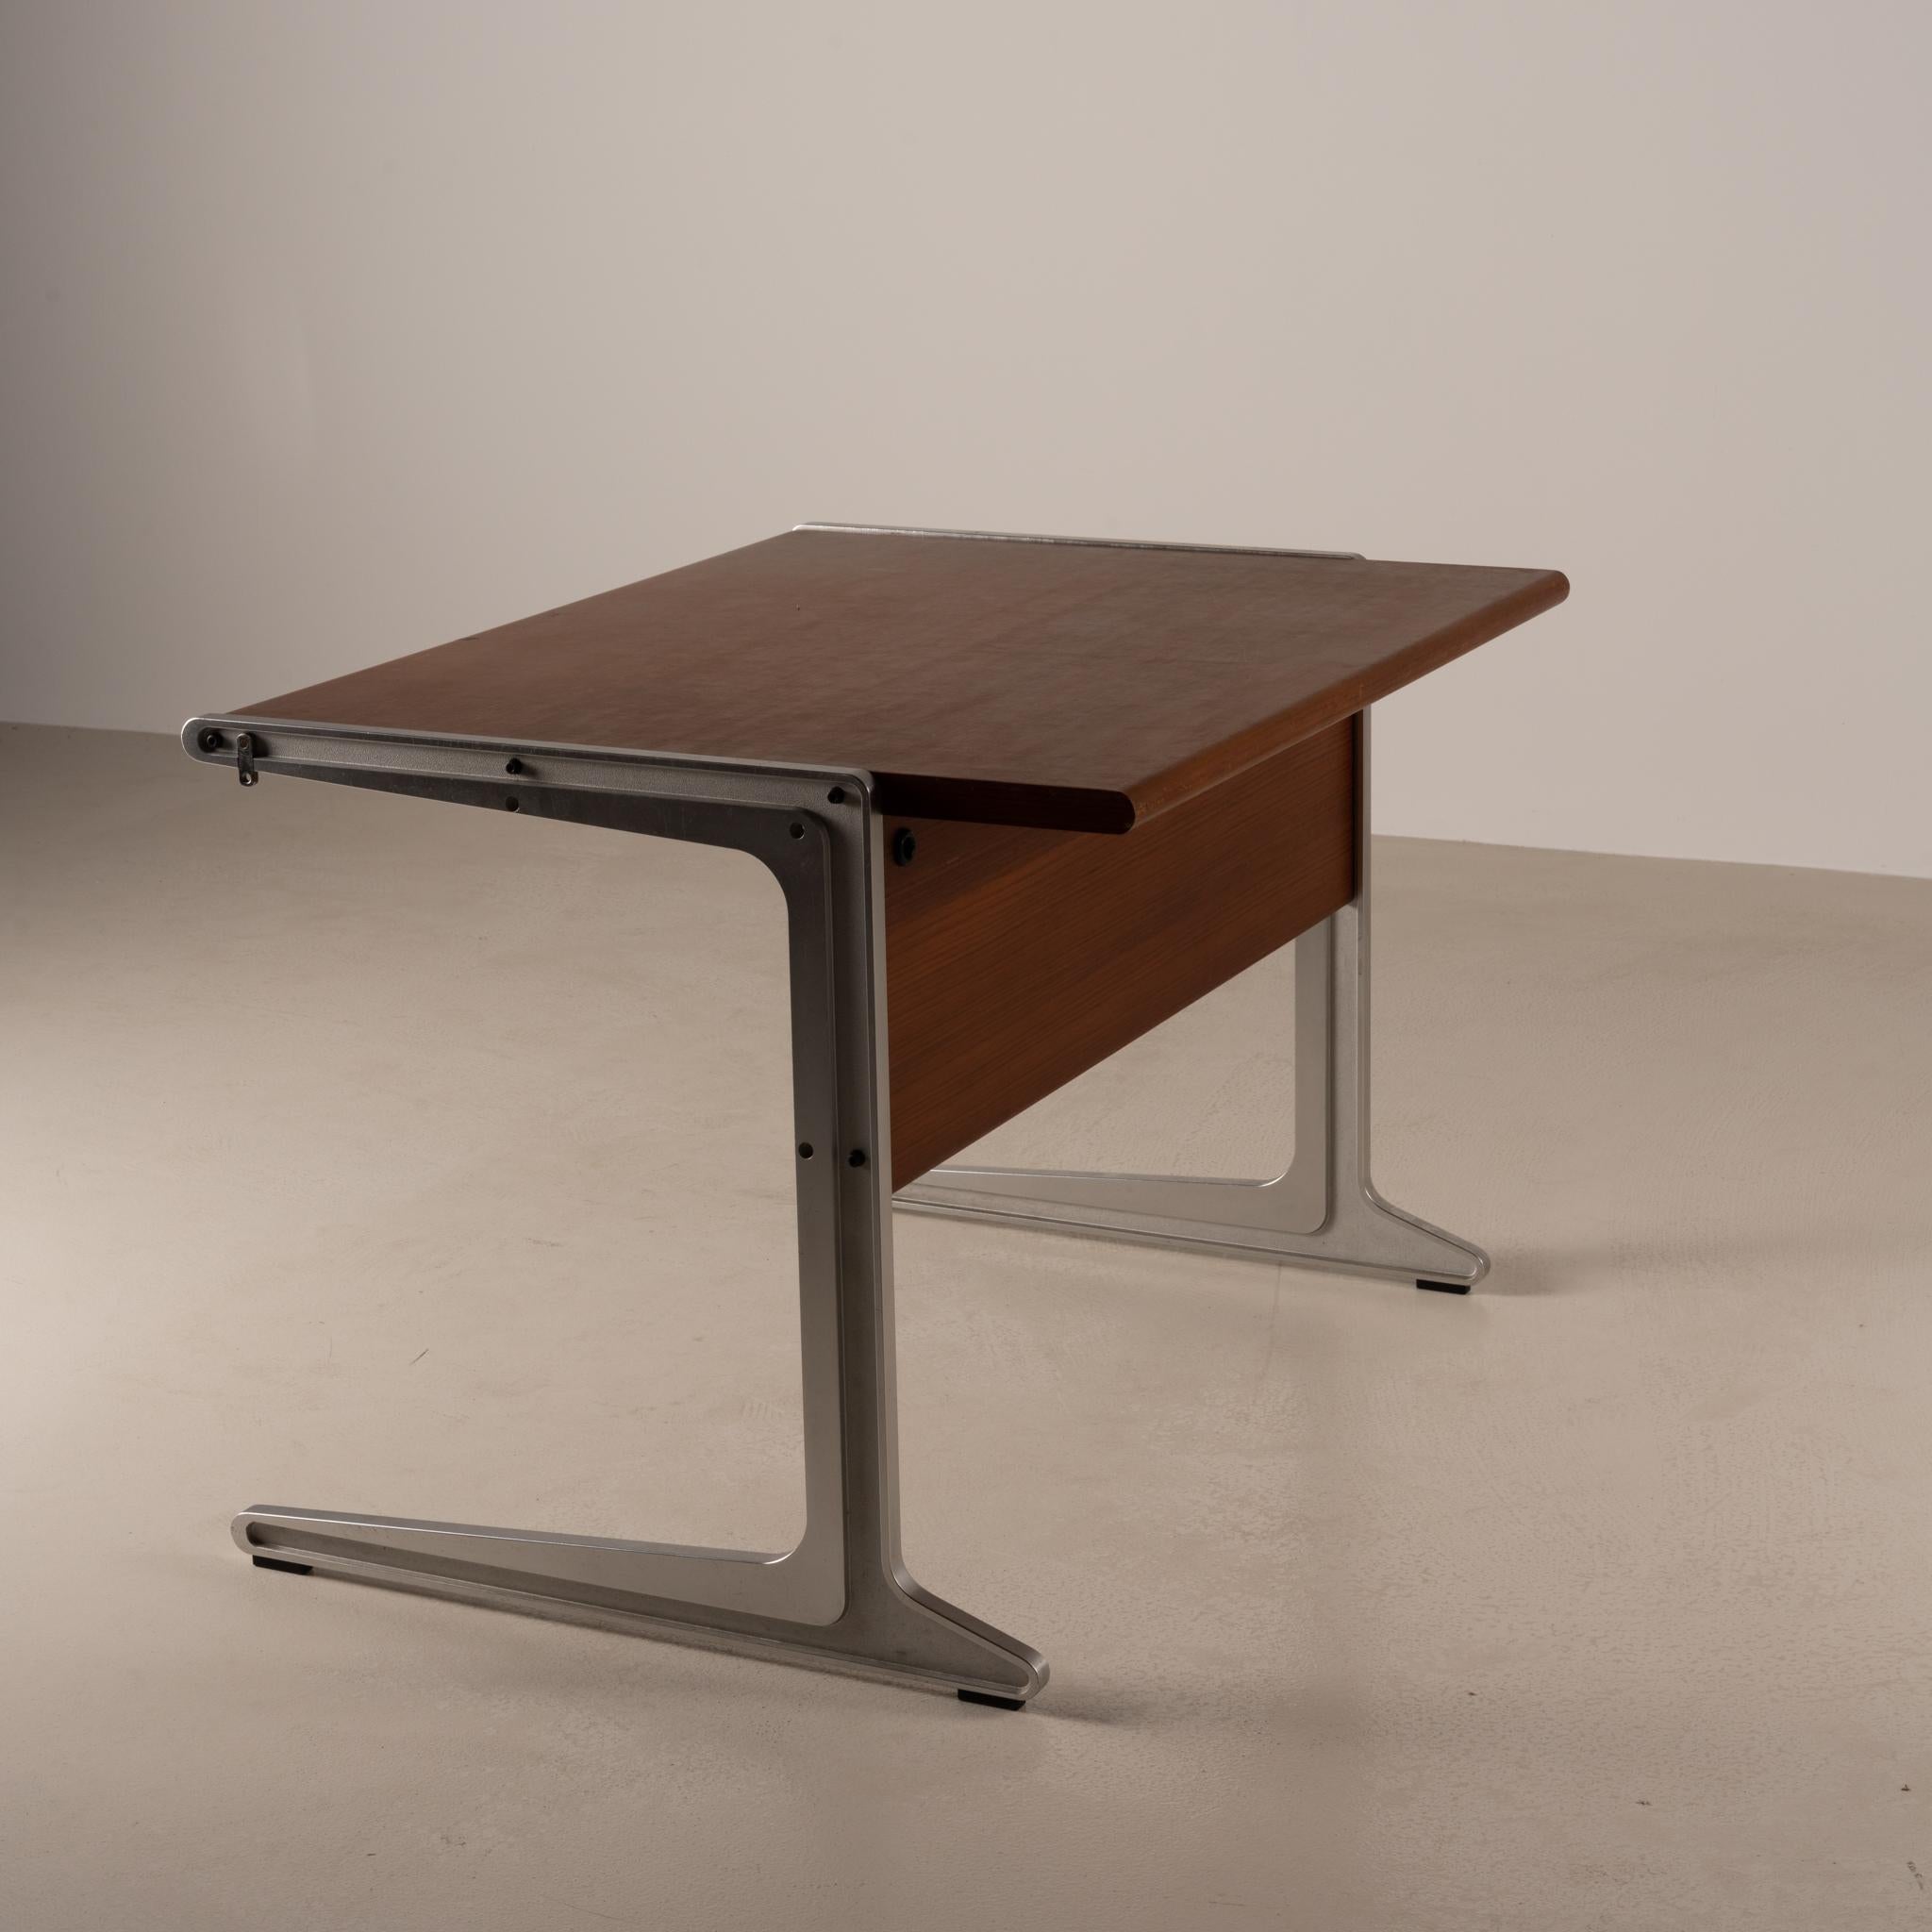 Dieser Schreibtisch wurde von Isamu Kenmochi für die OF Group 1 Collection'S von Tendo Mokko im Jahr 1971 entworfen. Er verfügt über 2 Schubladen mit Fächern für Büromaterial und das Label des Herstellers unter der Tischplatte.

Japanische Moderne: